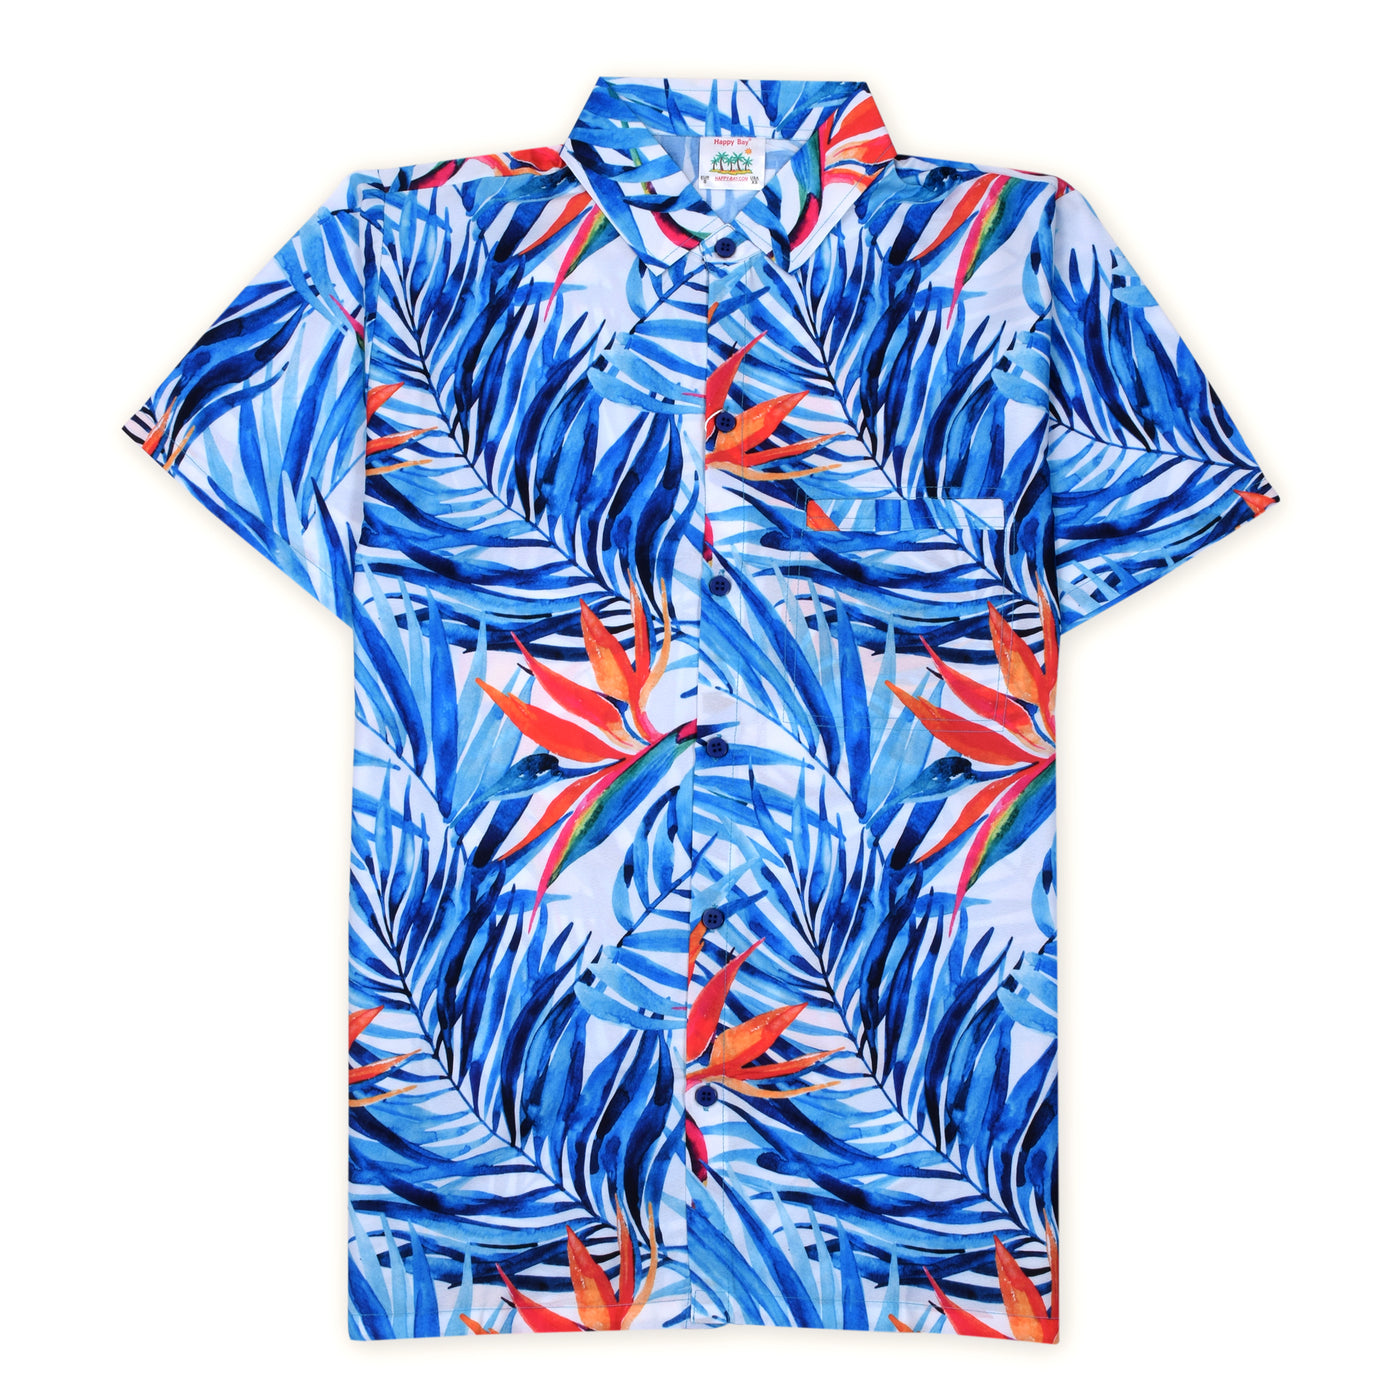 Buy now waves of ocean hawaiian shirt